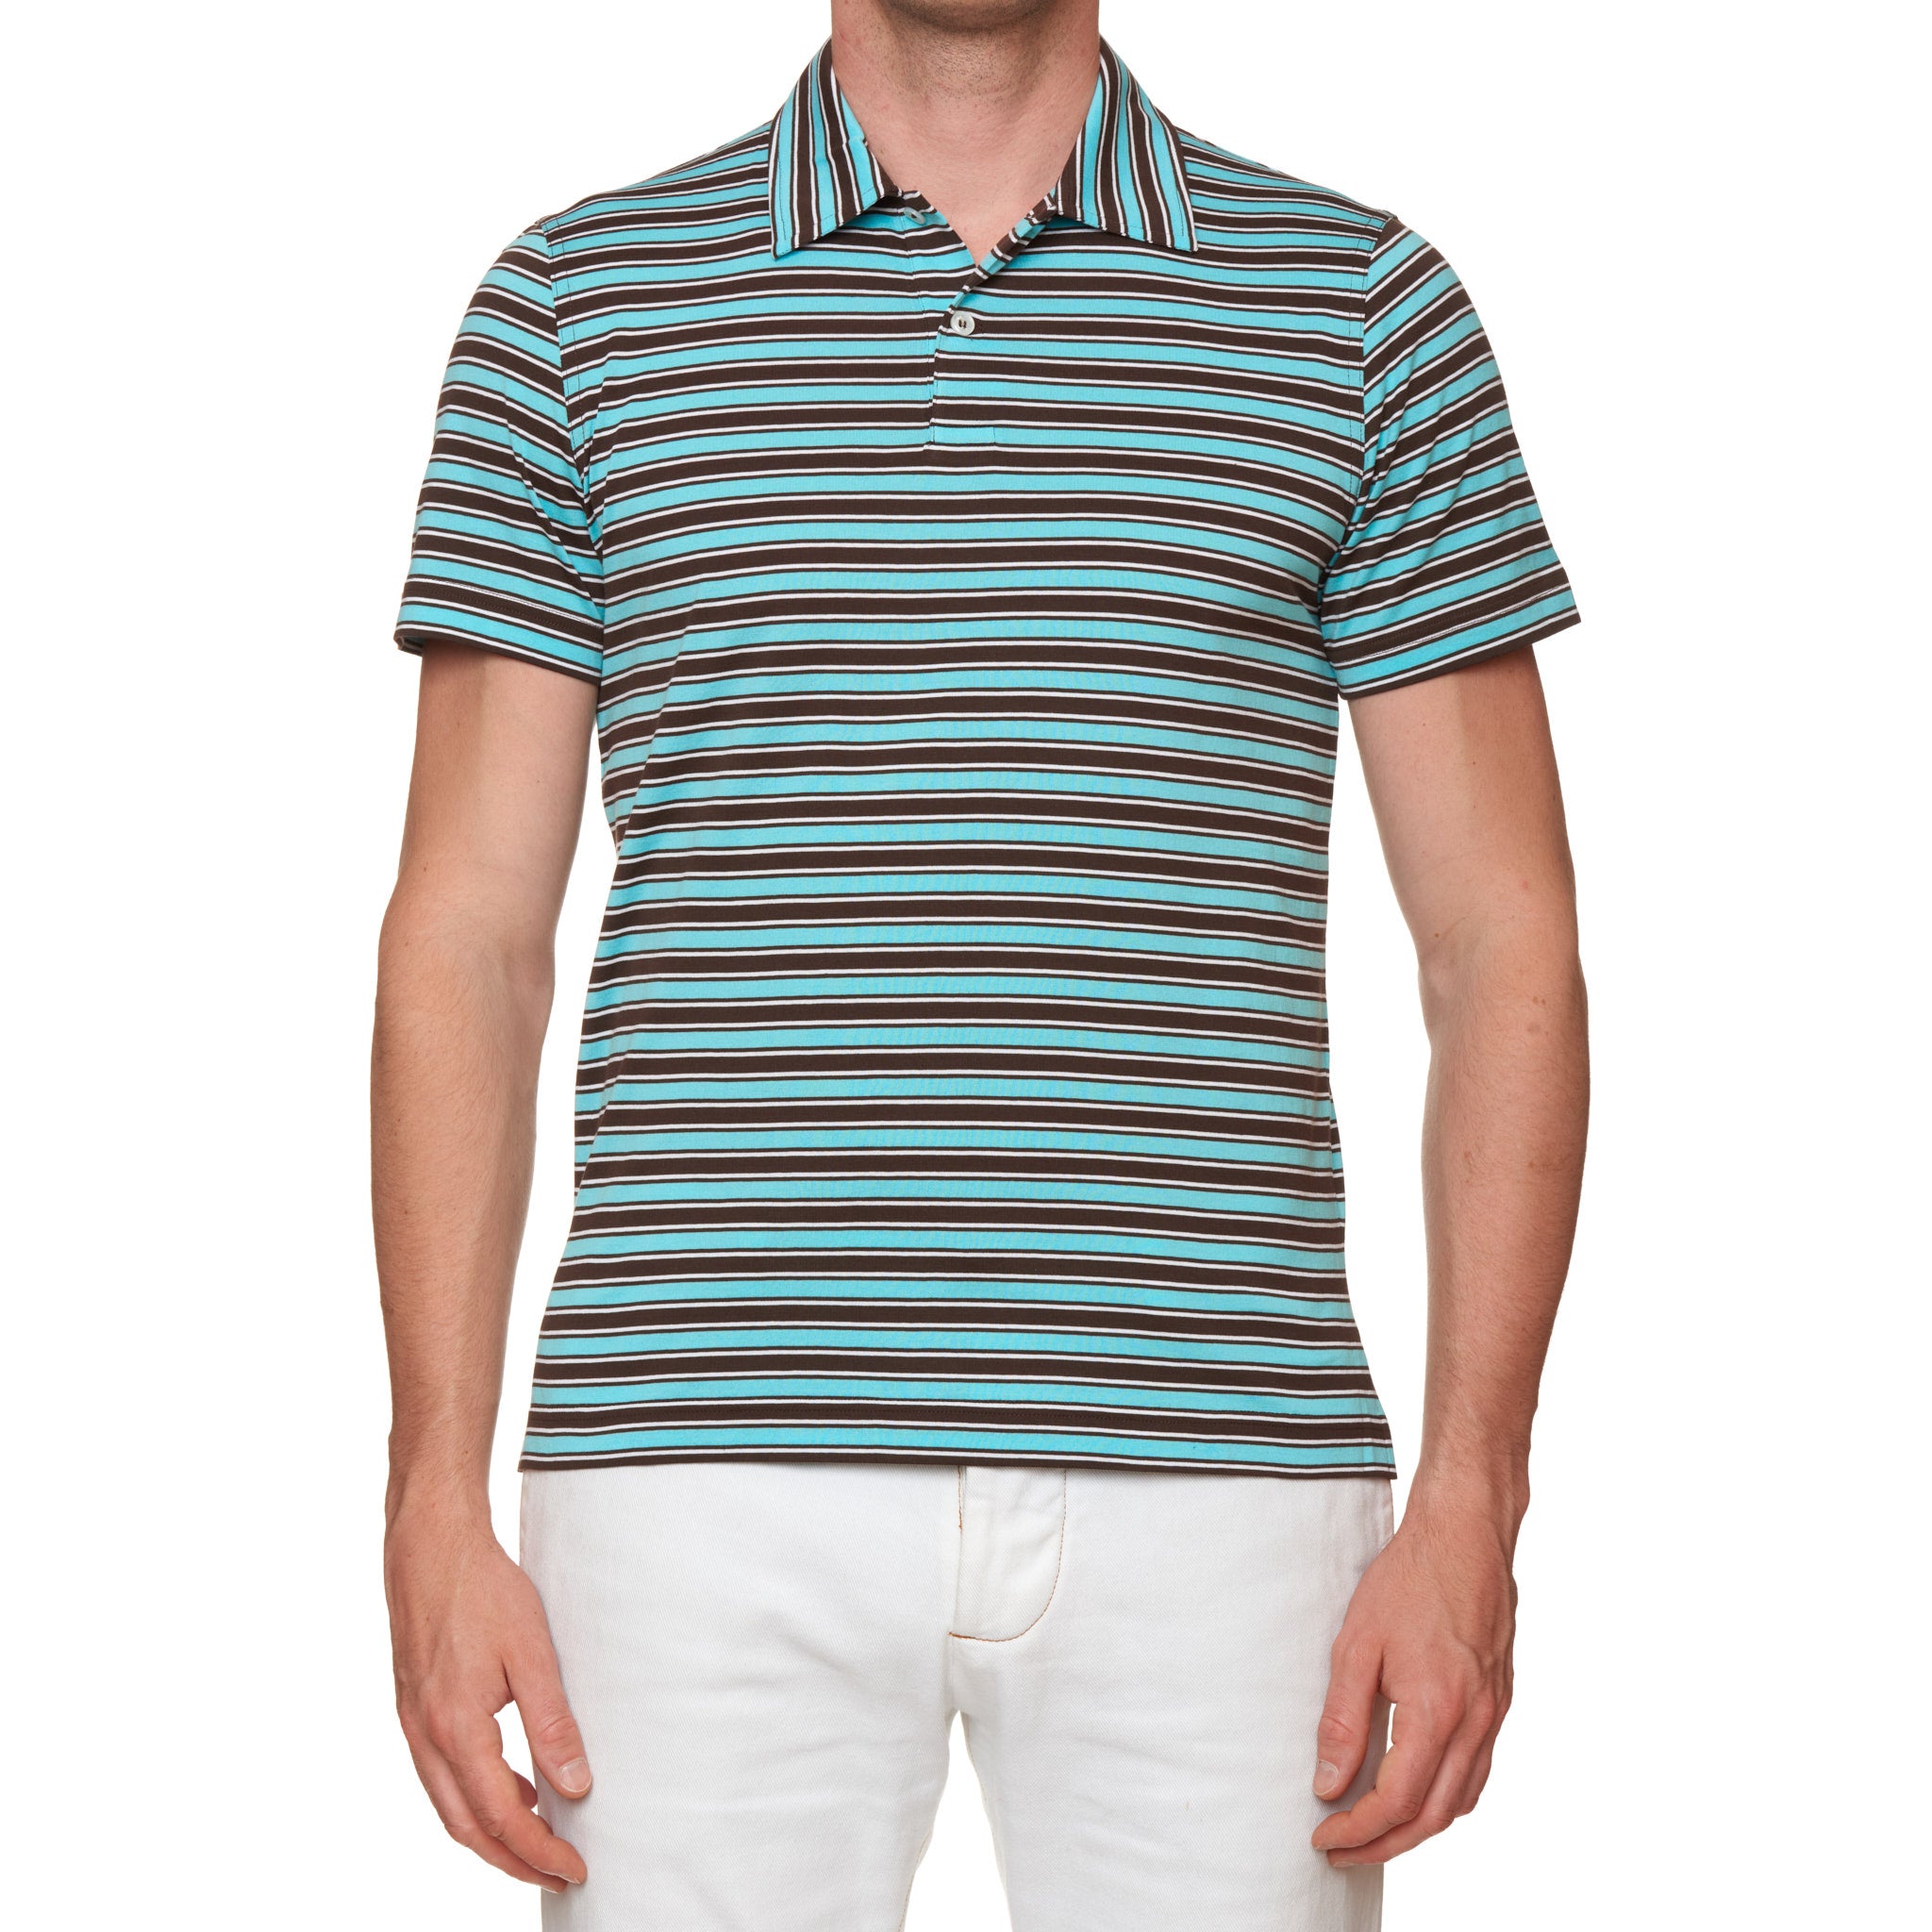 Fedeli short-sleeve cotton polo shirt - Black